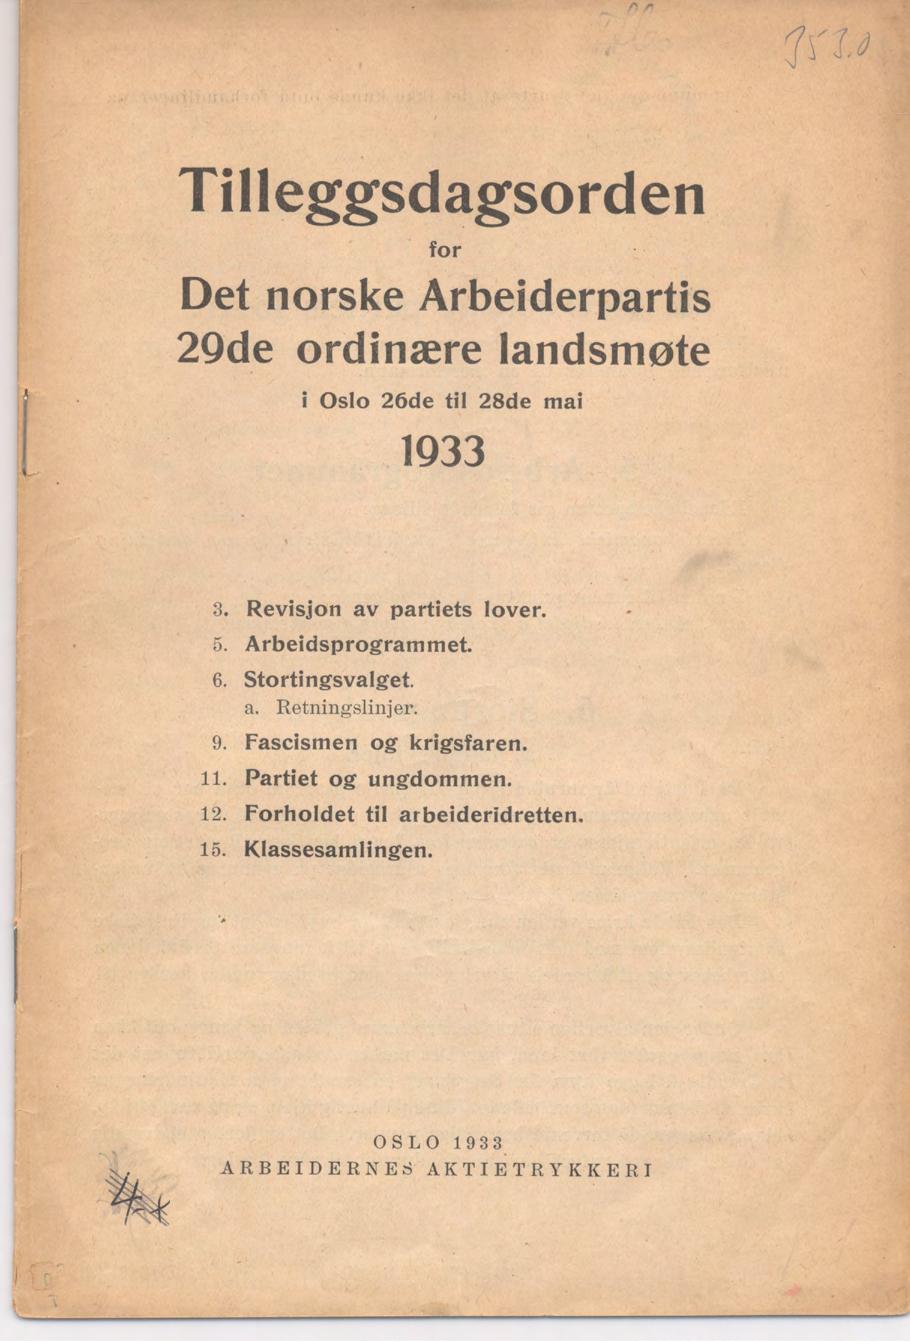 Tilleggsdagsorden for Det norske Arbeiderpartis 2Qde ordinære landsmøte i O slo 26de til 28de mai 1933 3. Revisjon av partiets lover. 5. Arbeidsprogram met. 6.